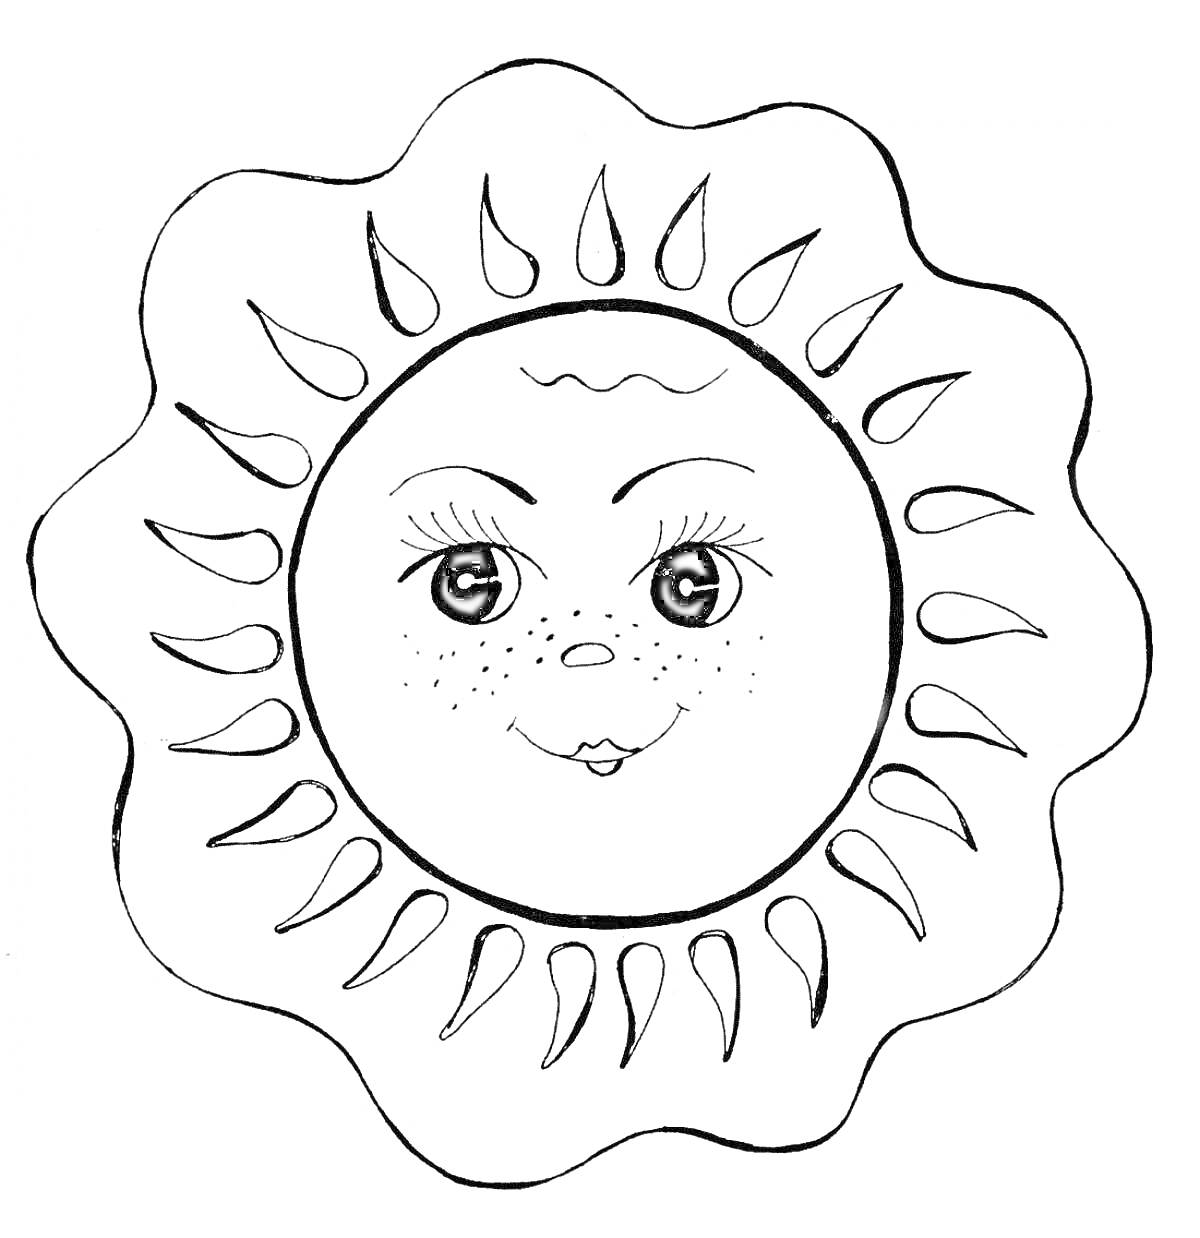 Раскраска Солнышко с лицом, лучами и милыми веснушками